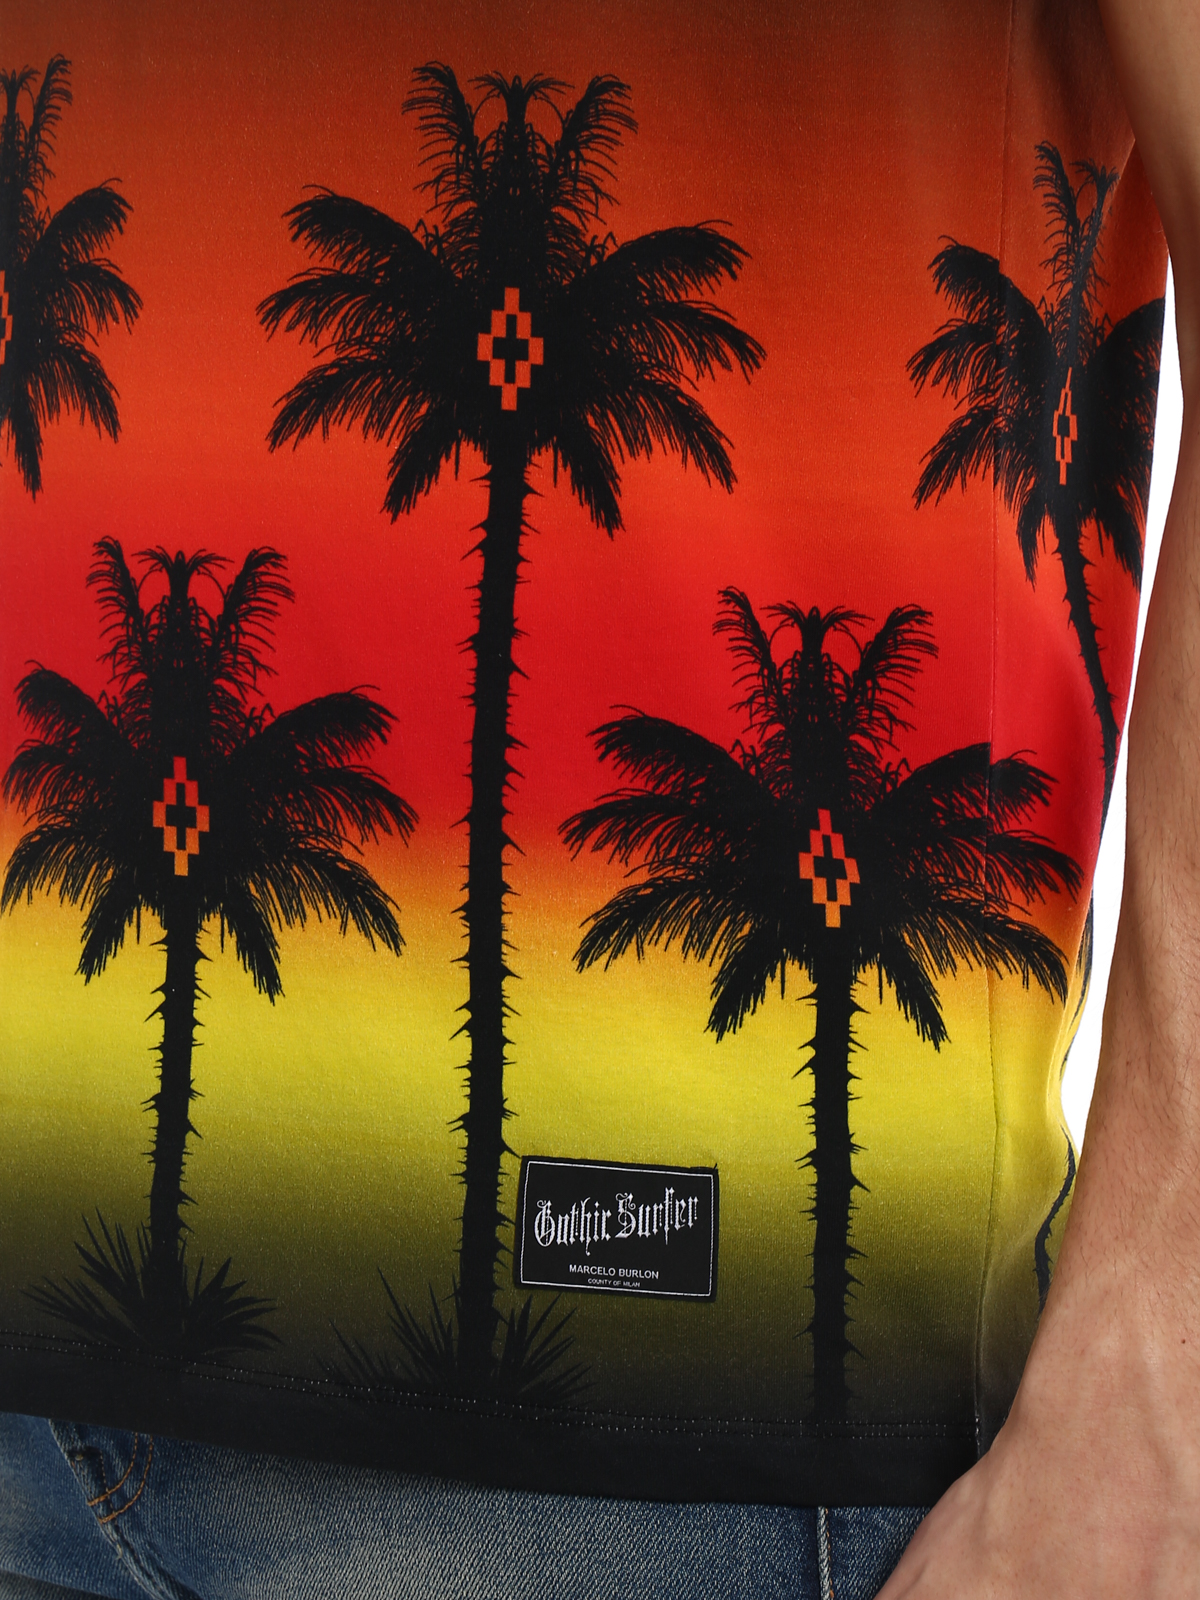 ugunstige Furnace praktisk Marcelo Burlon Buy Online Red Palm T-shirt - Marcelo Burlon Palm Shirt -  1200x1600 Wallpaper - teahub.io